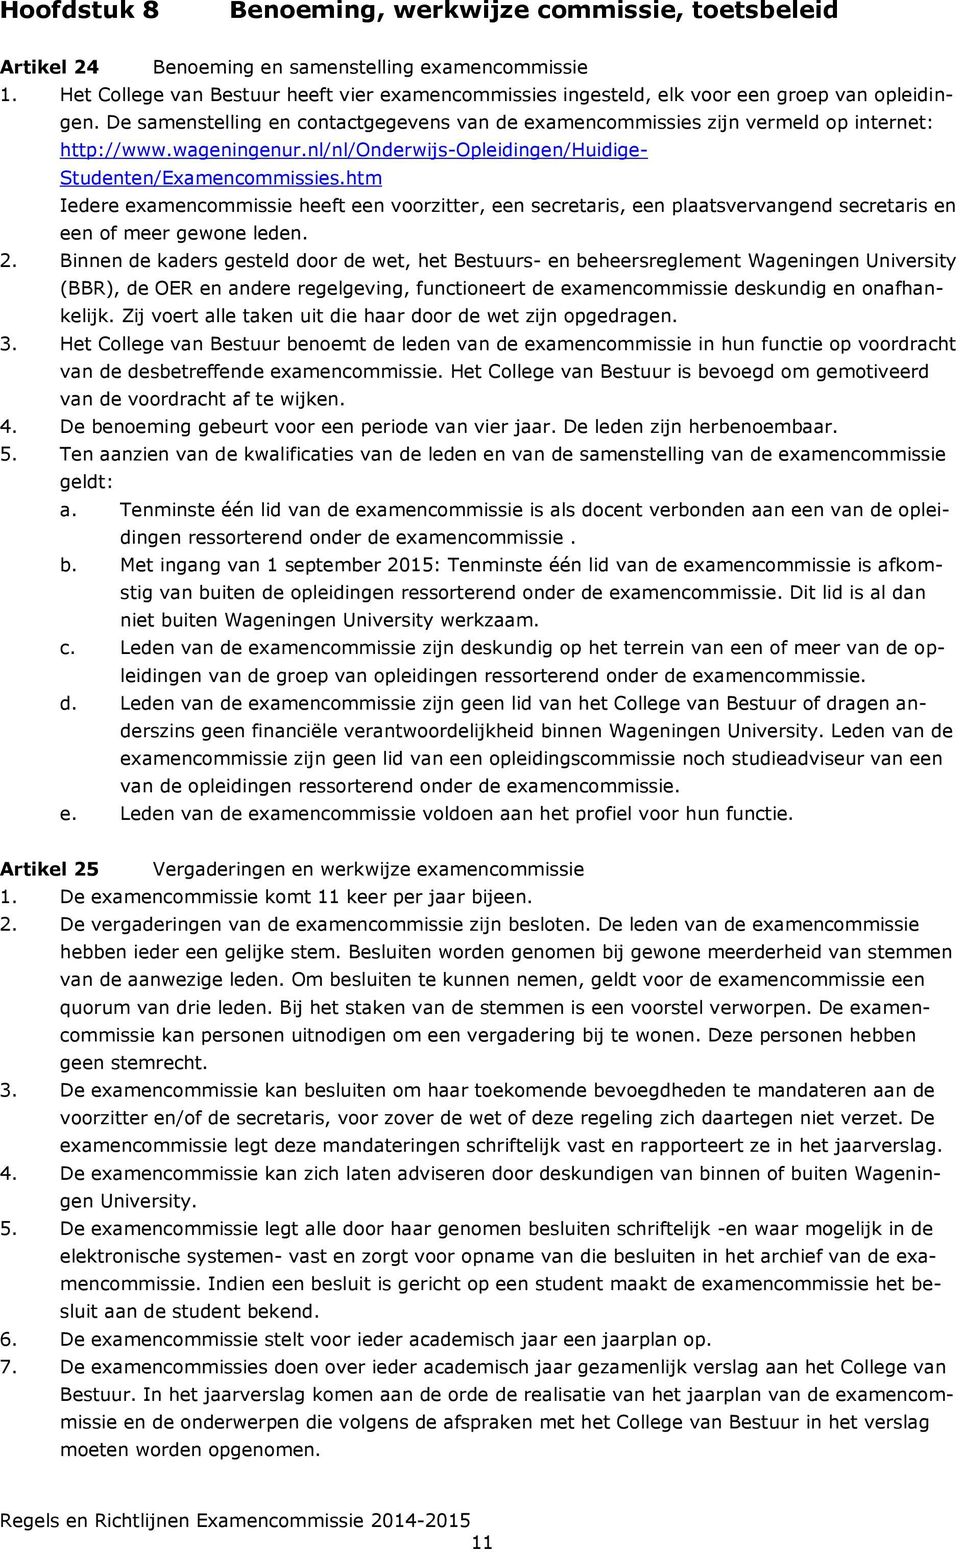 wageningenur.nl/nl/onderwijs-opleidingen/huidige- Studenten/Examencommissies.